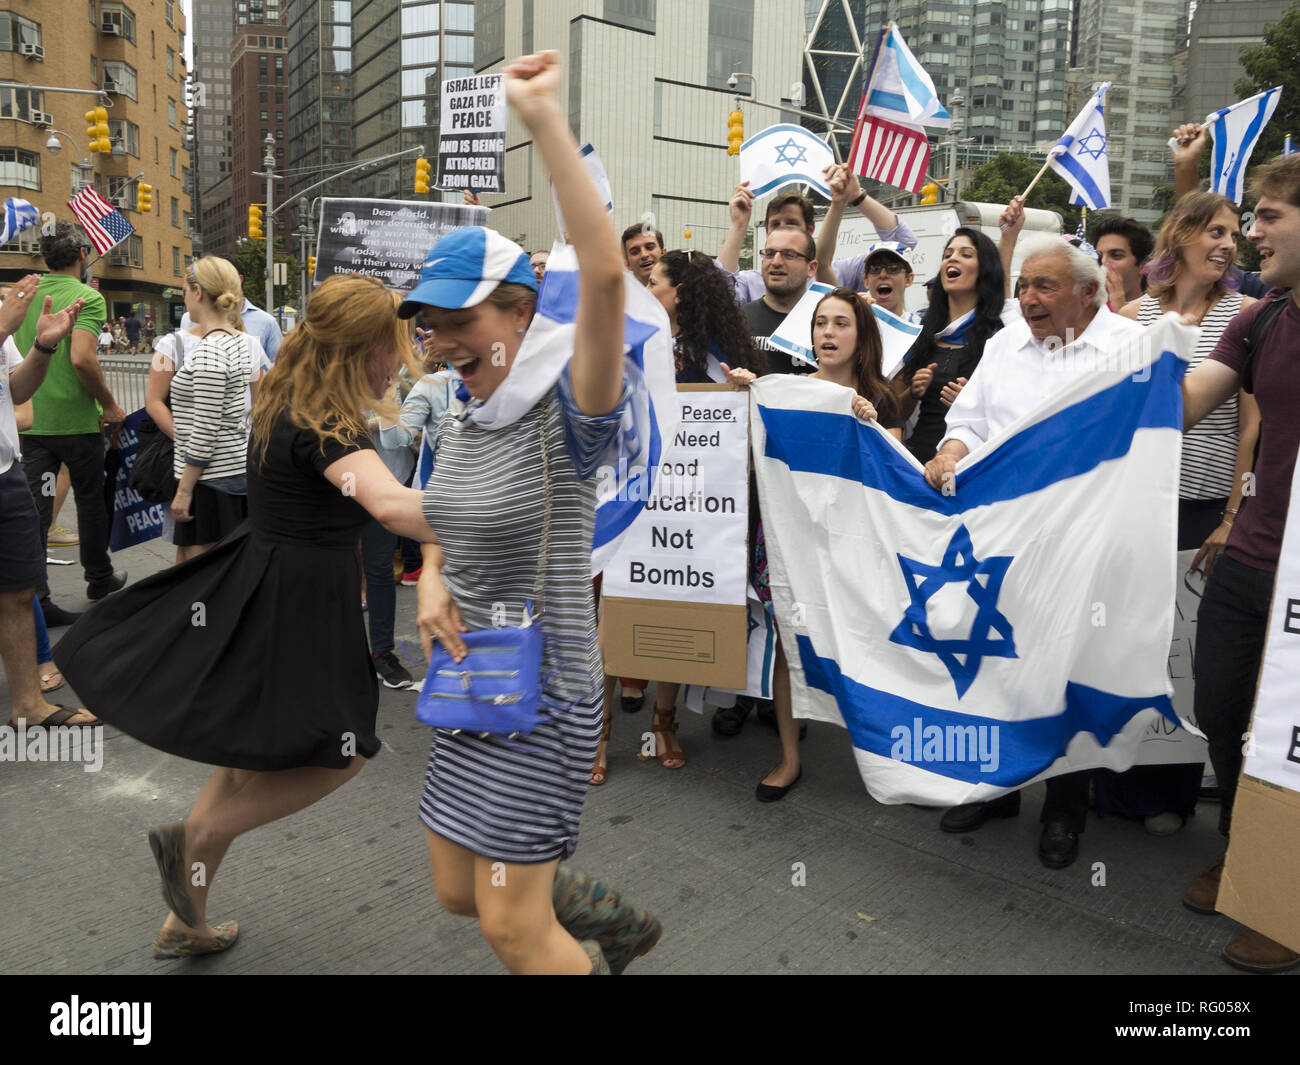 Pro-Israel Demonstranten Rally in der Nähe des Columbus Circle in NEW YORK Israel während des israelisch-palästinensischen Konflikts zu unterstützen, 1. August 2014. Stockfoto